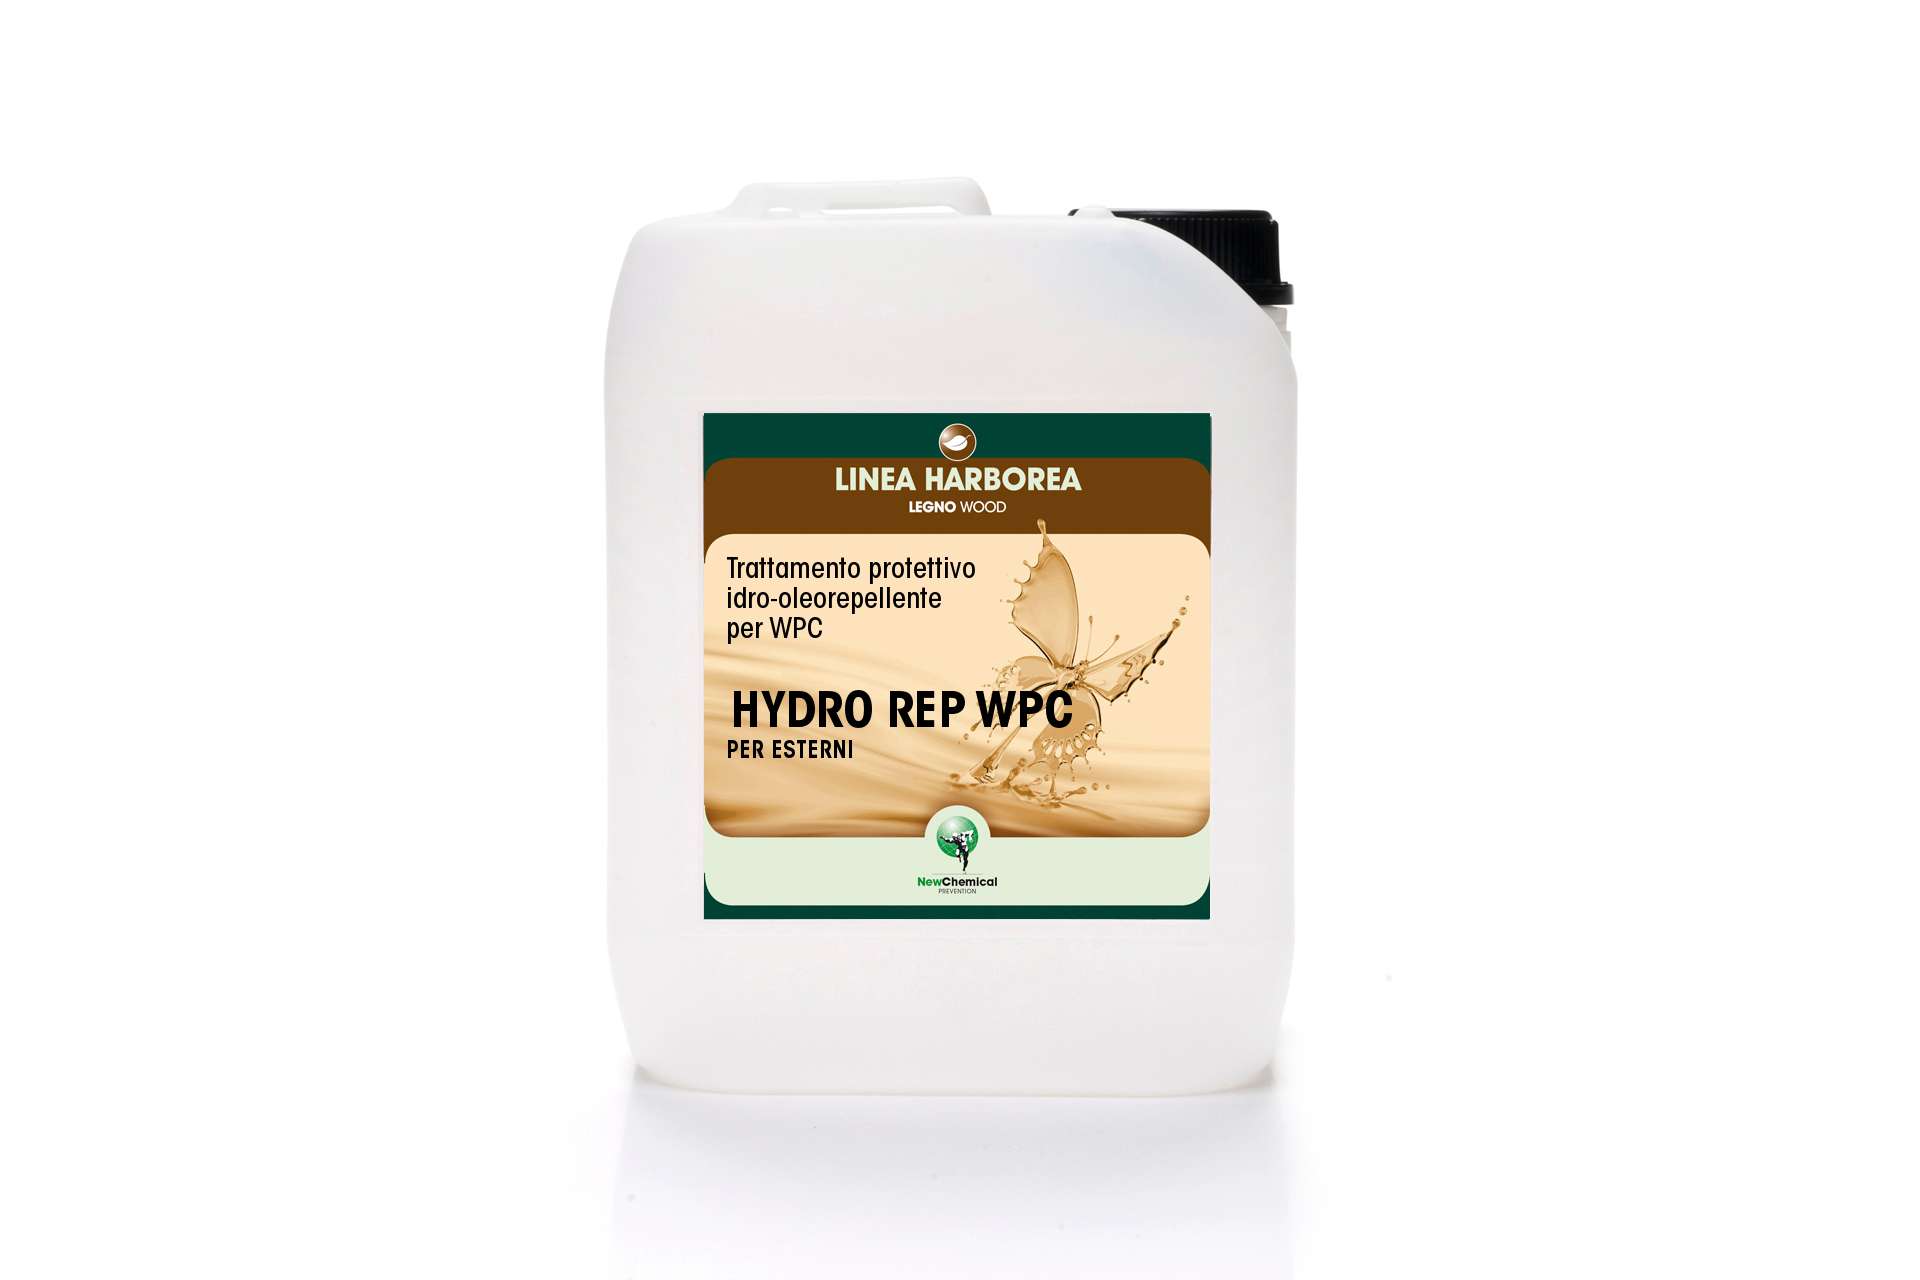 Hydro Rep WPC protettivo idro-oleorepellente per WPC per esterni - Eternal Parquet